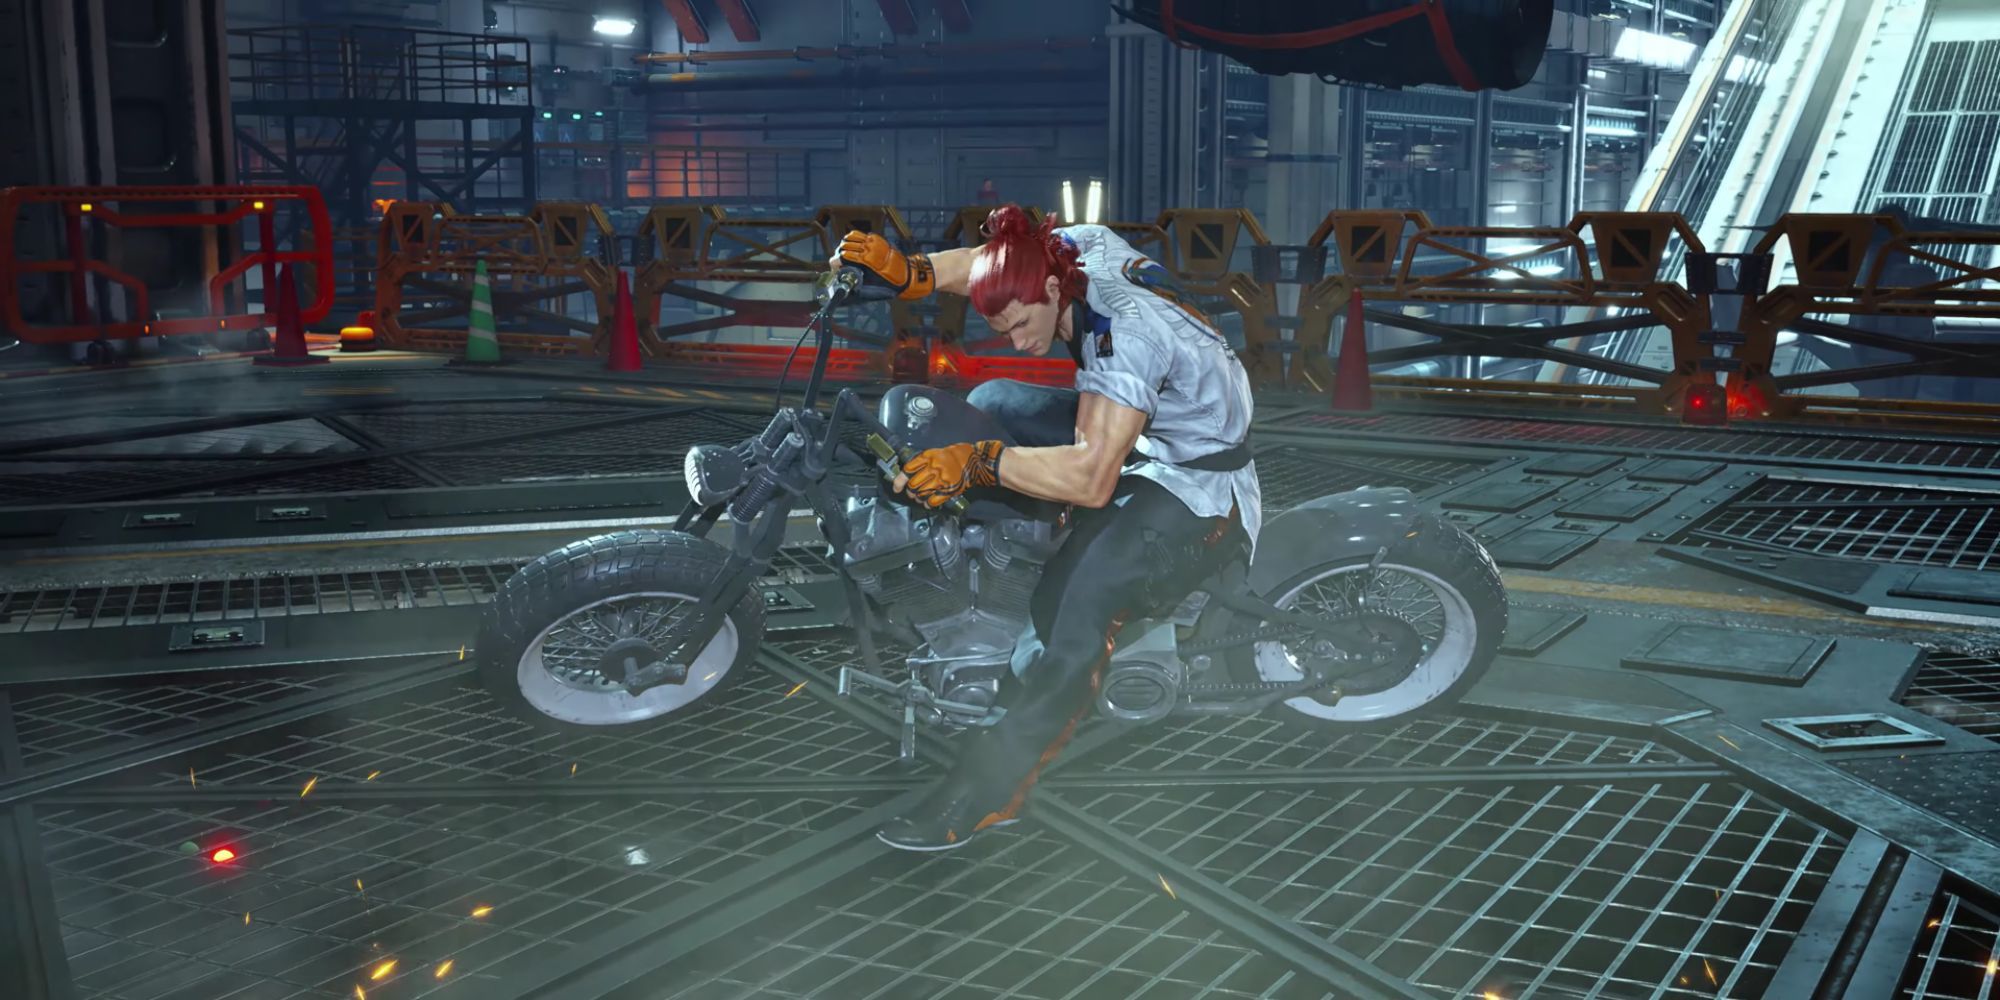 Hwoarang doing an Akira slide in Tekken 8.